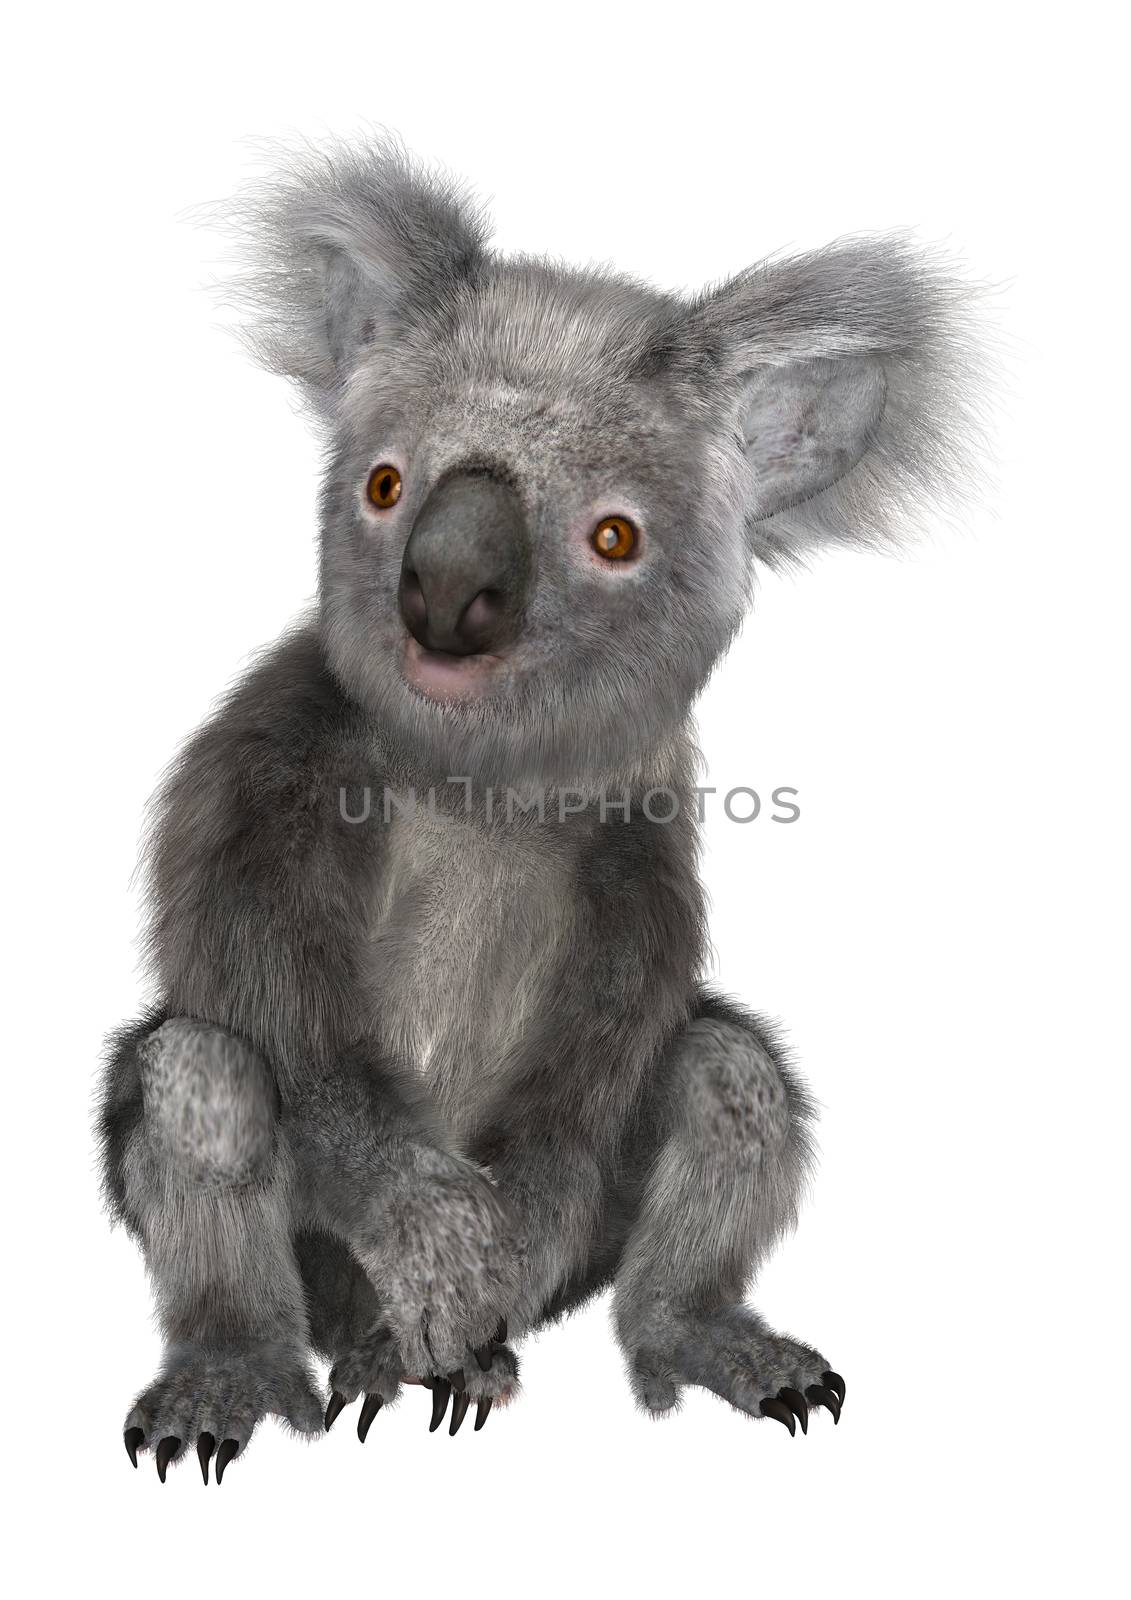 Koala by Vac